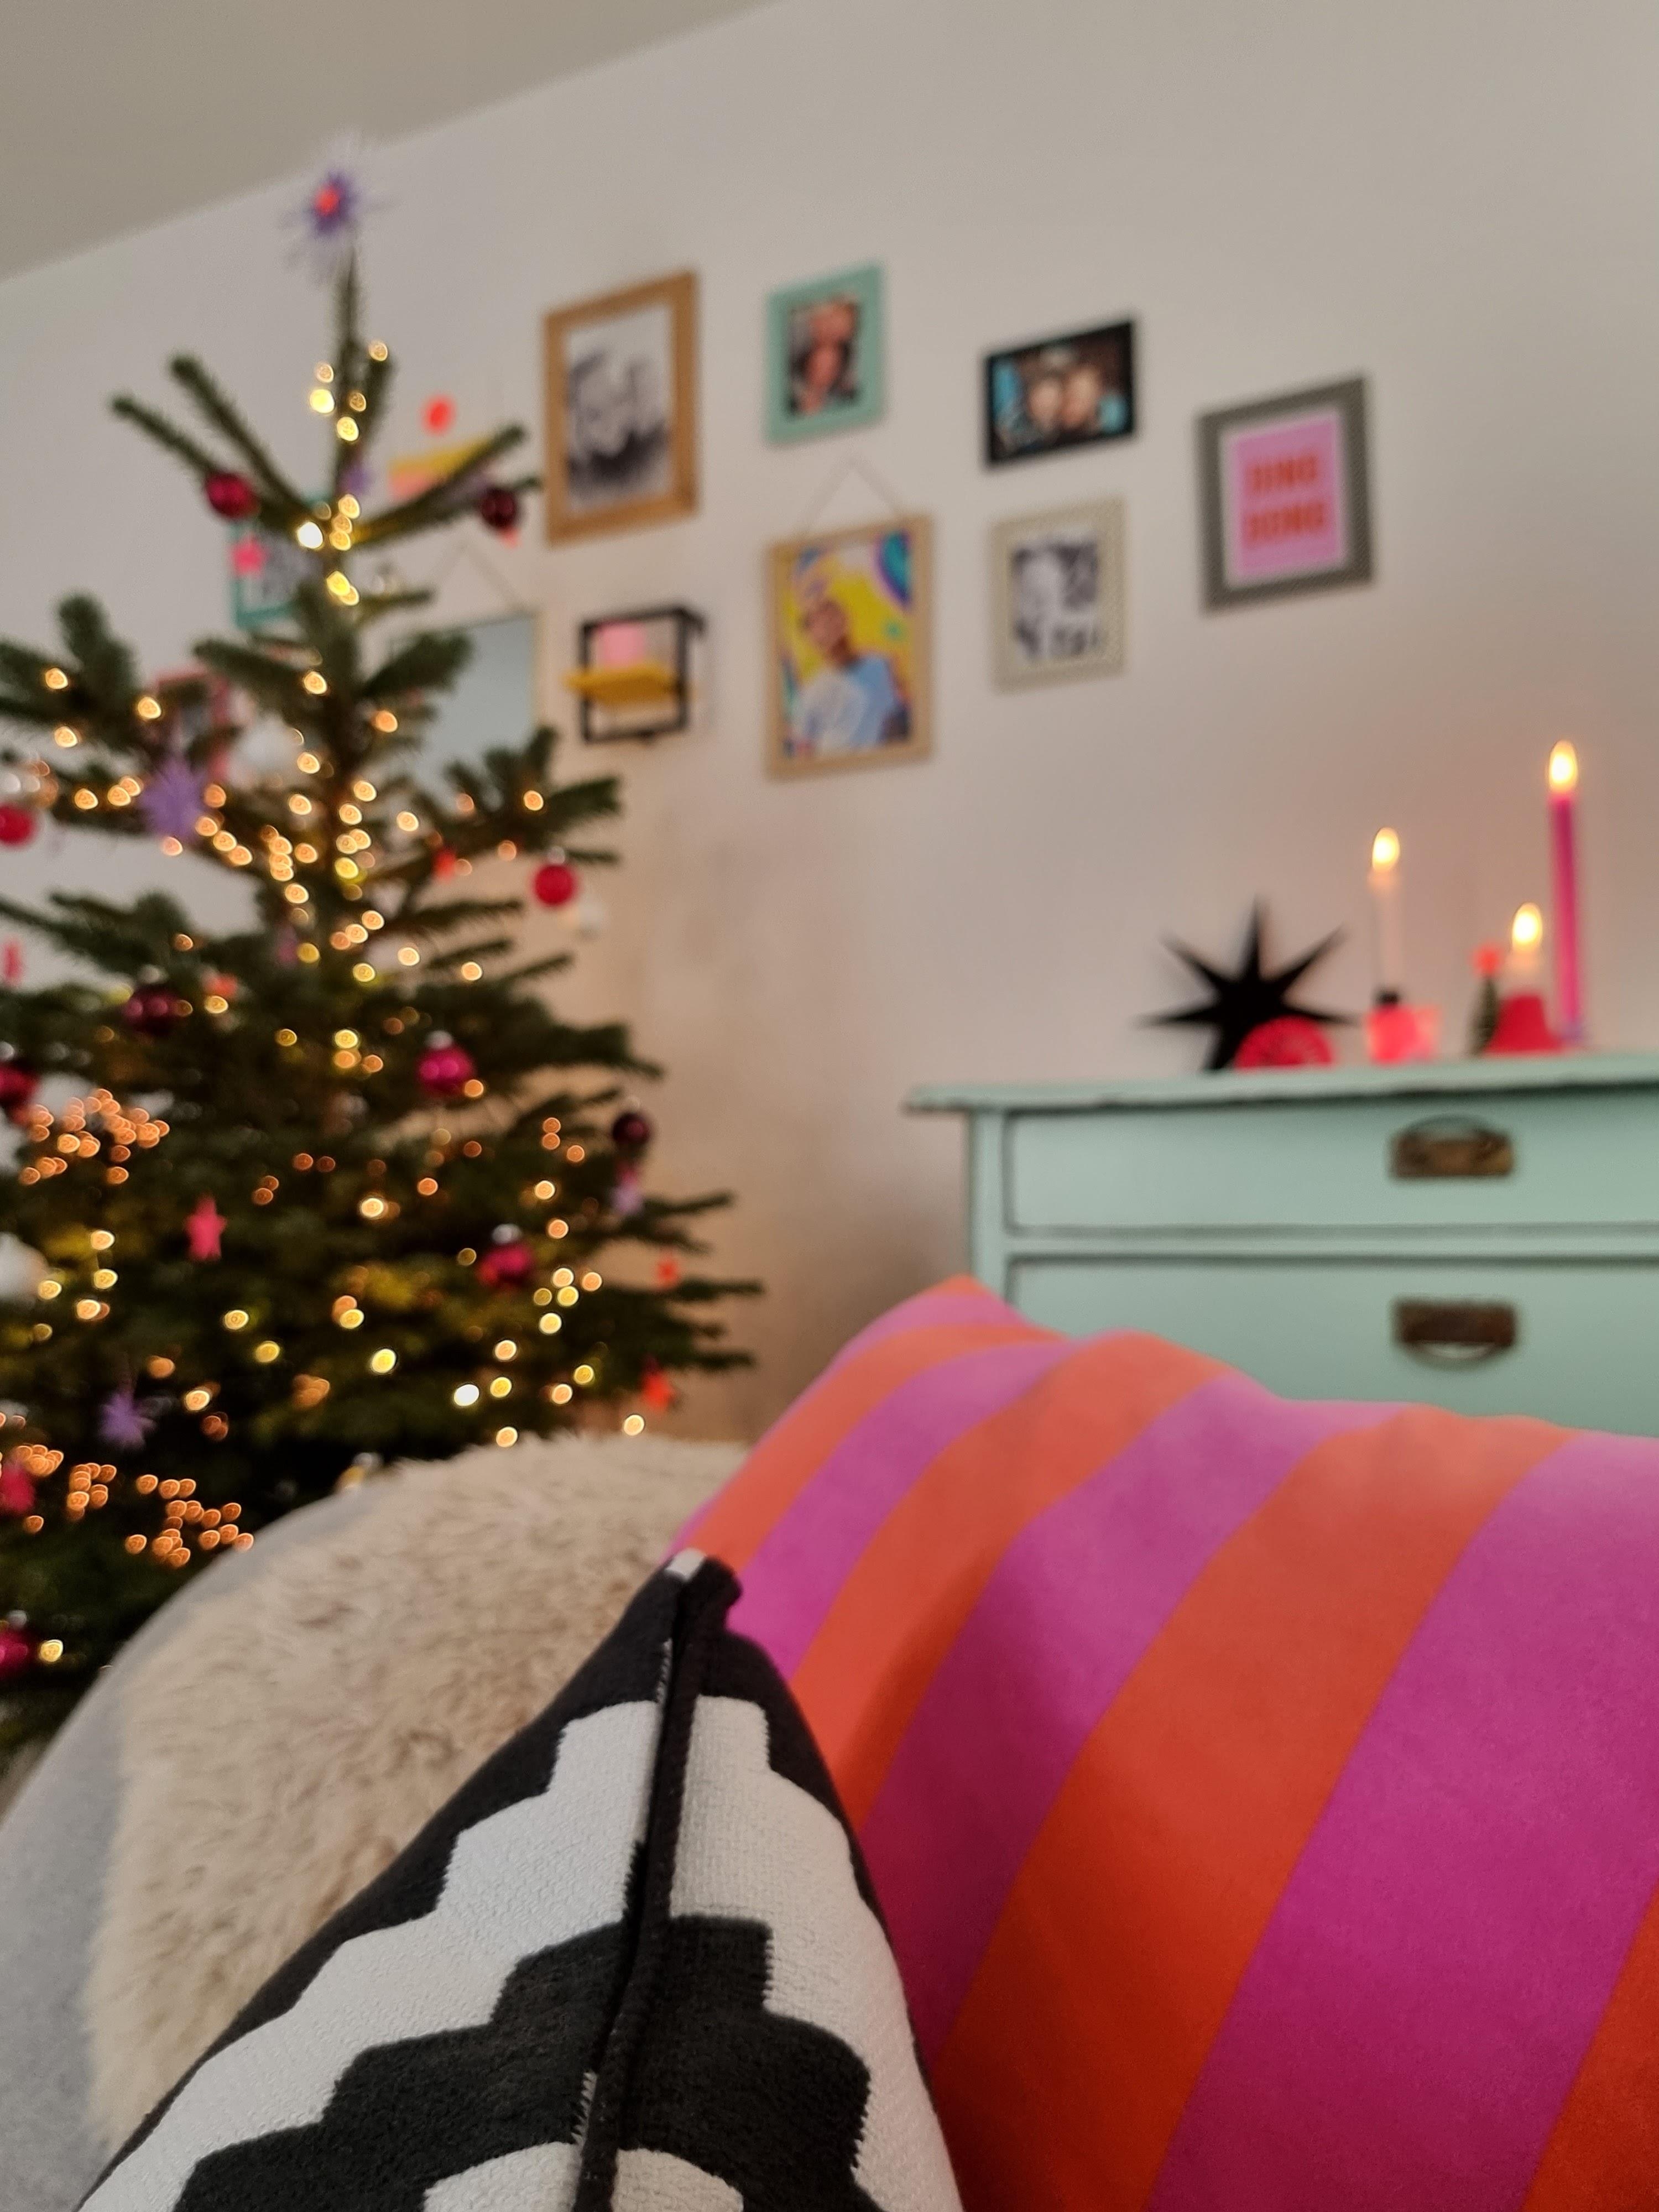 Heute wird relaxt 😇 #weihnachten #weihnachtsbaum #colorfulchristmas #xmas #wohnzimmer #vintage #cozy